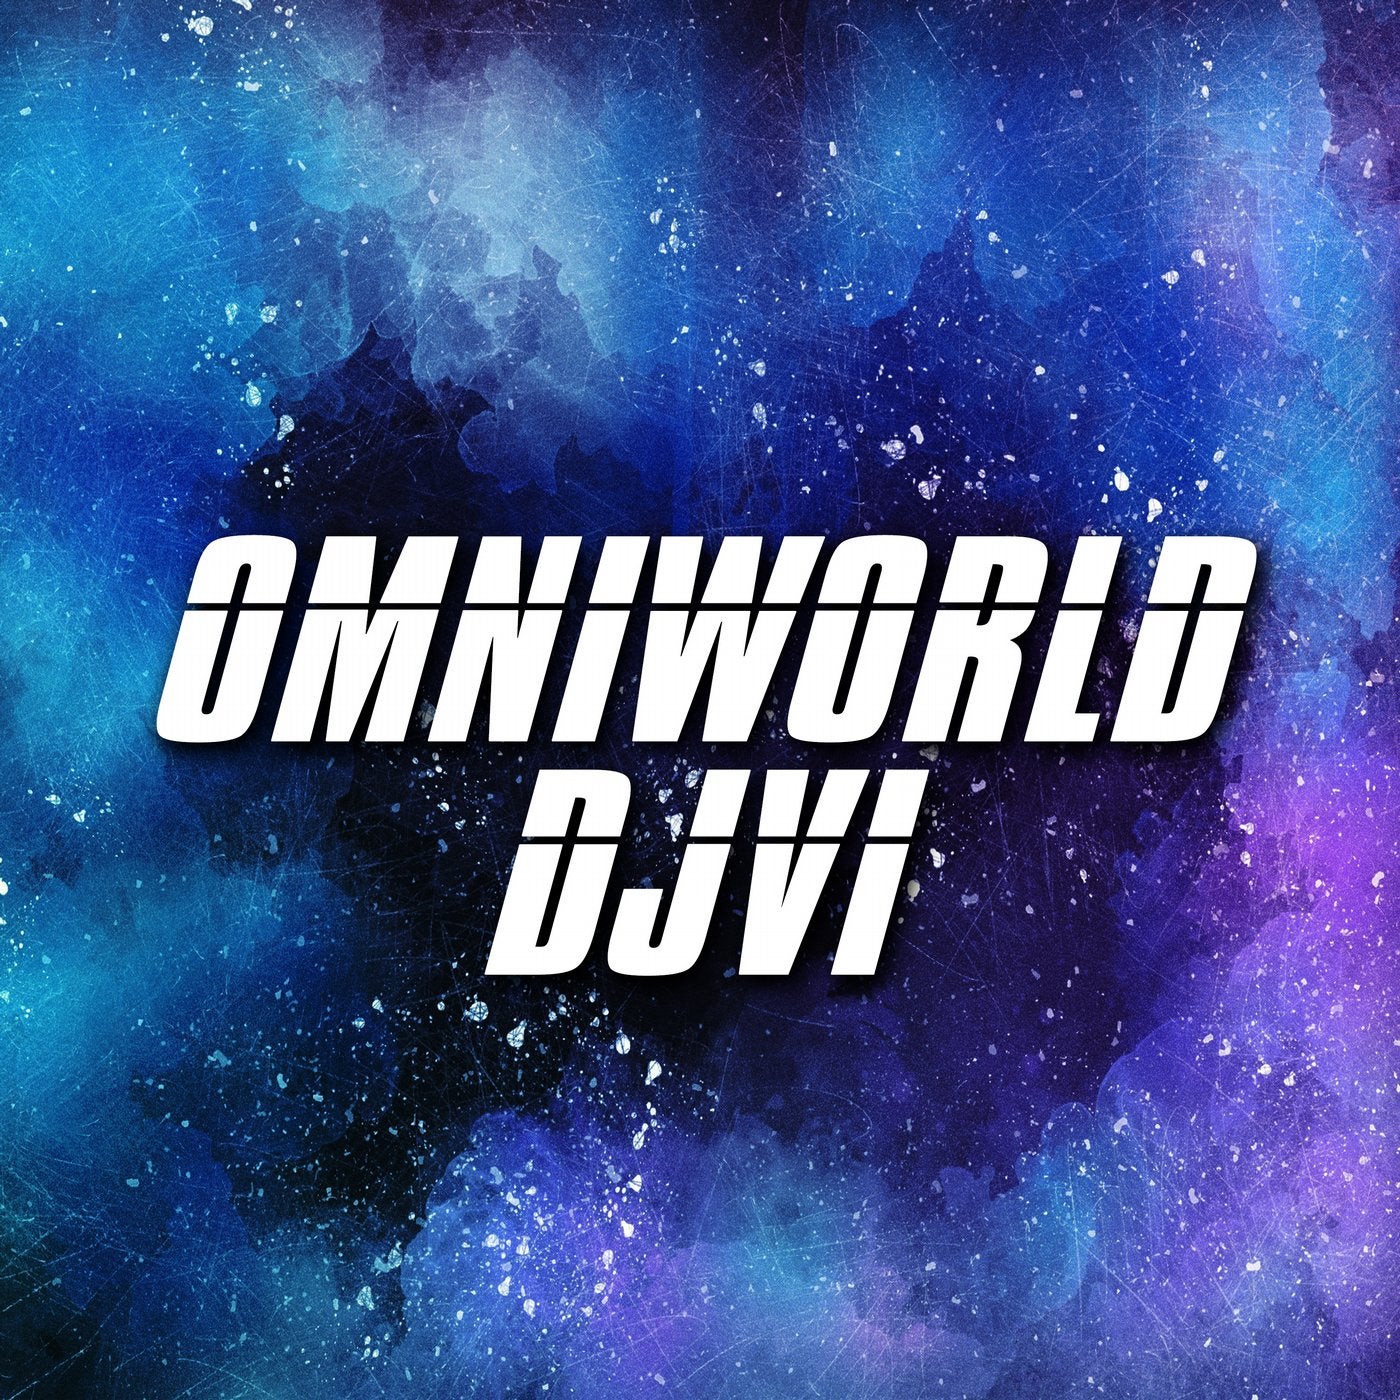 Omniworld